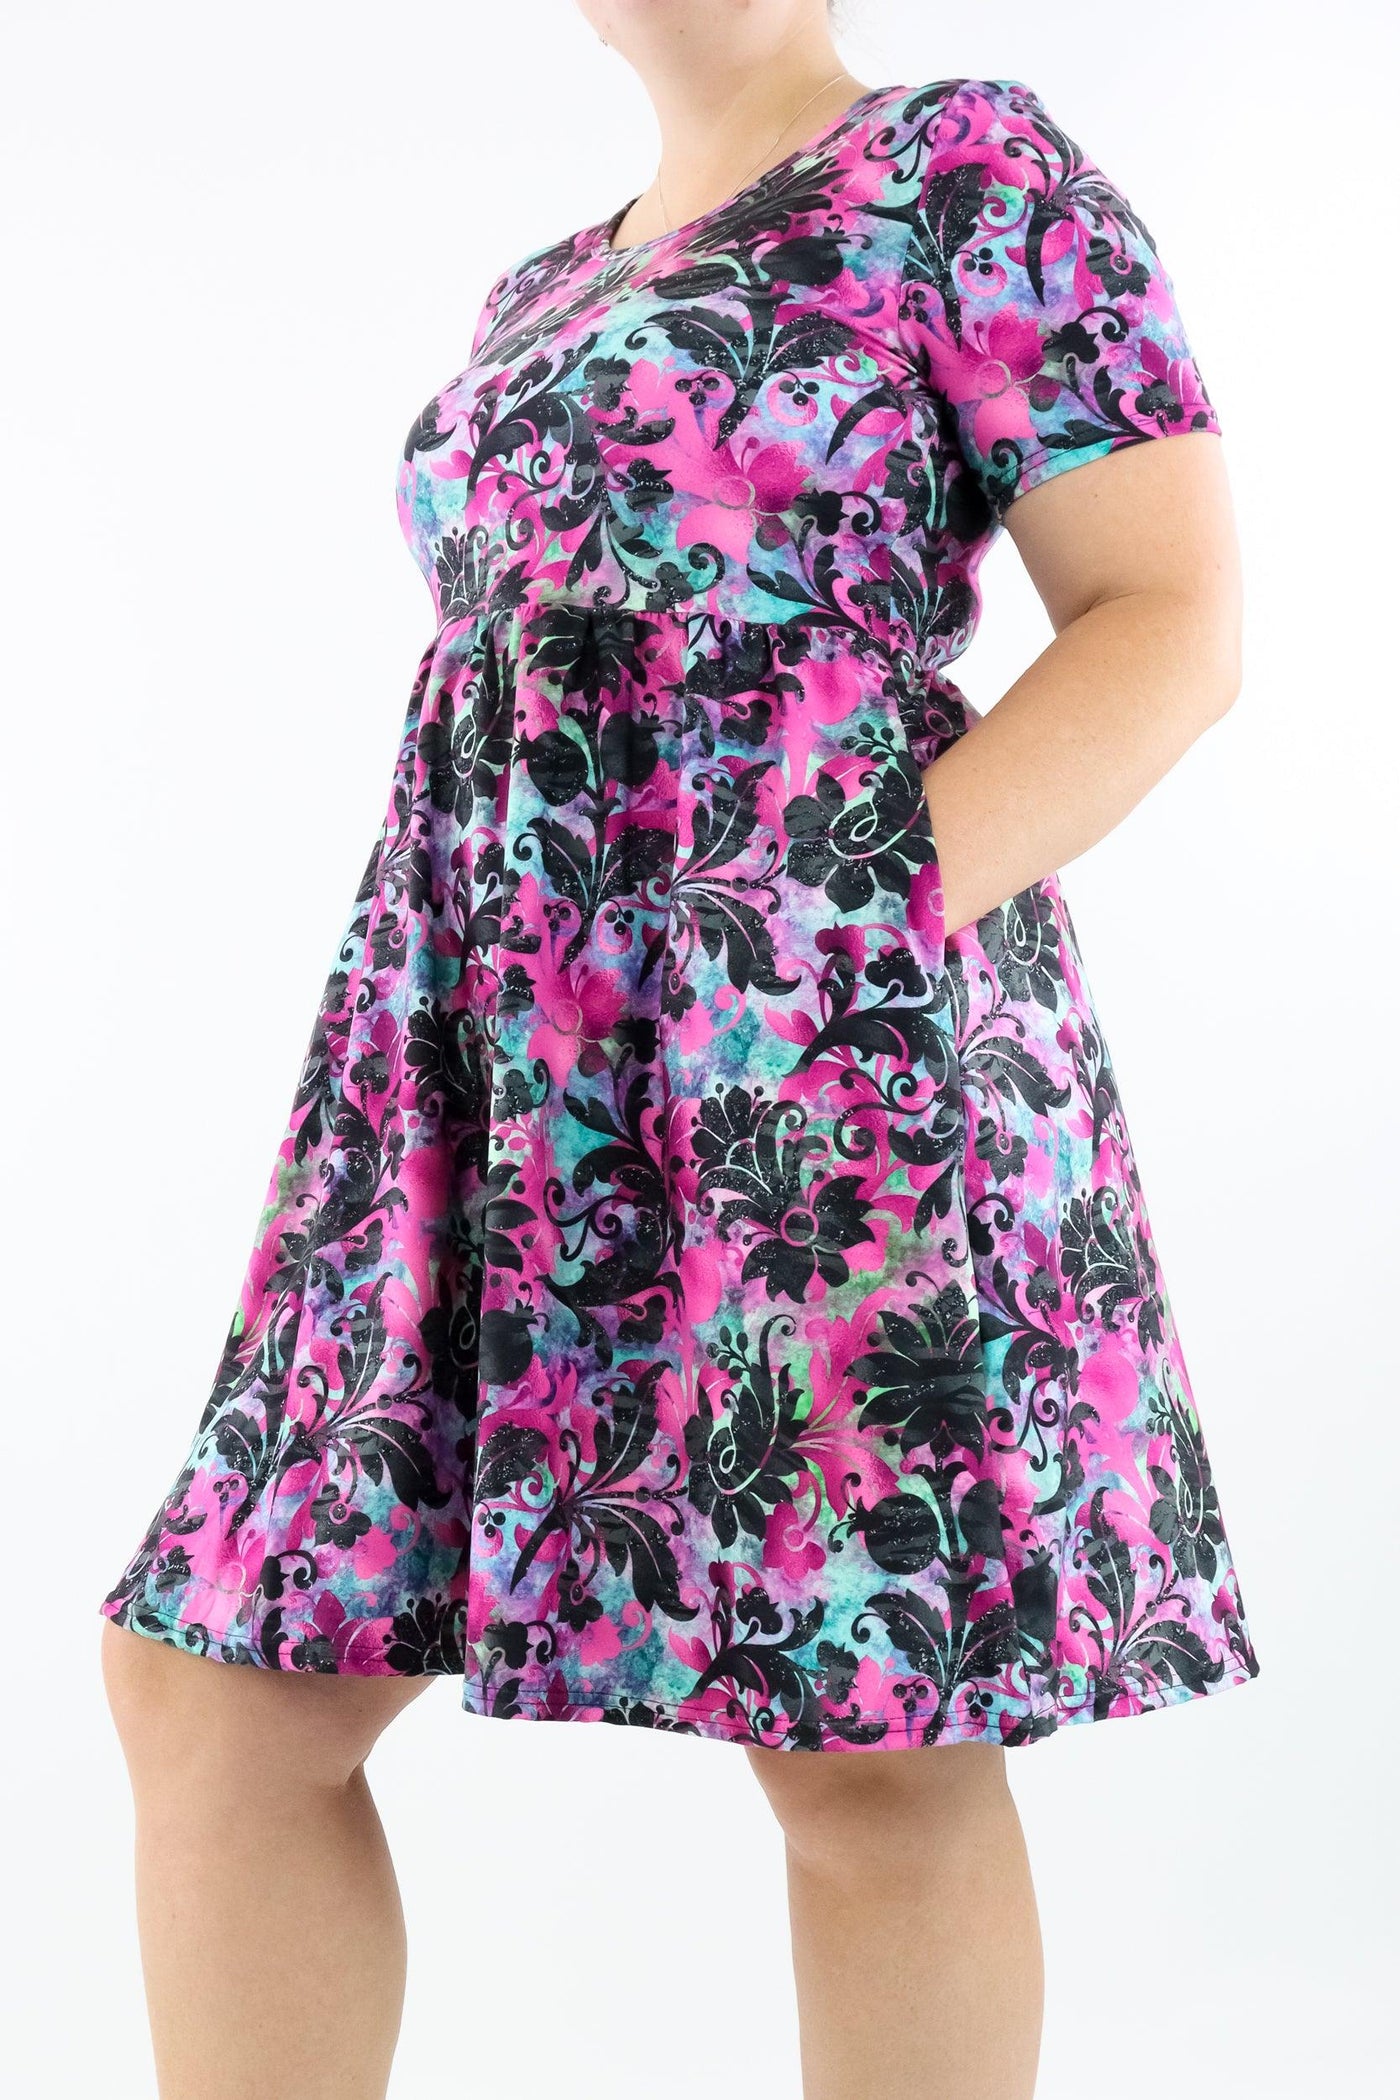 Glisten Floral - Short Sleeve Skater Dress - Knee Length - Side Pockets - Pawlie